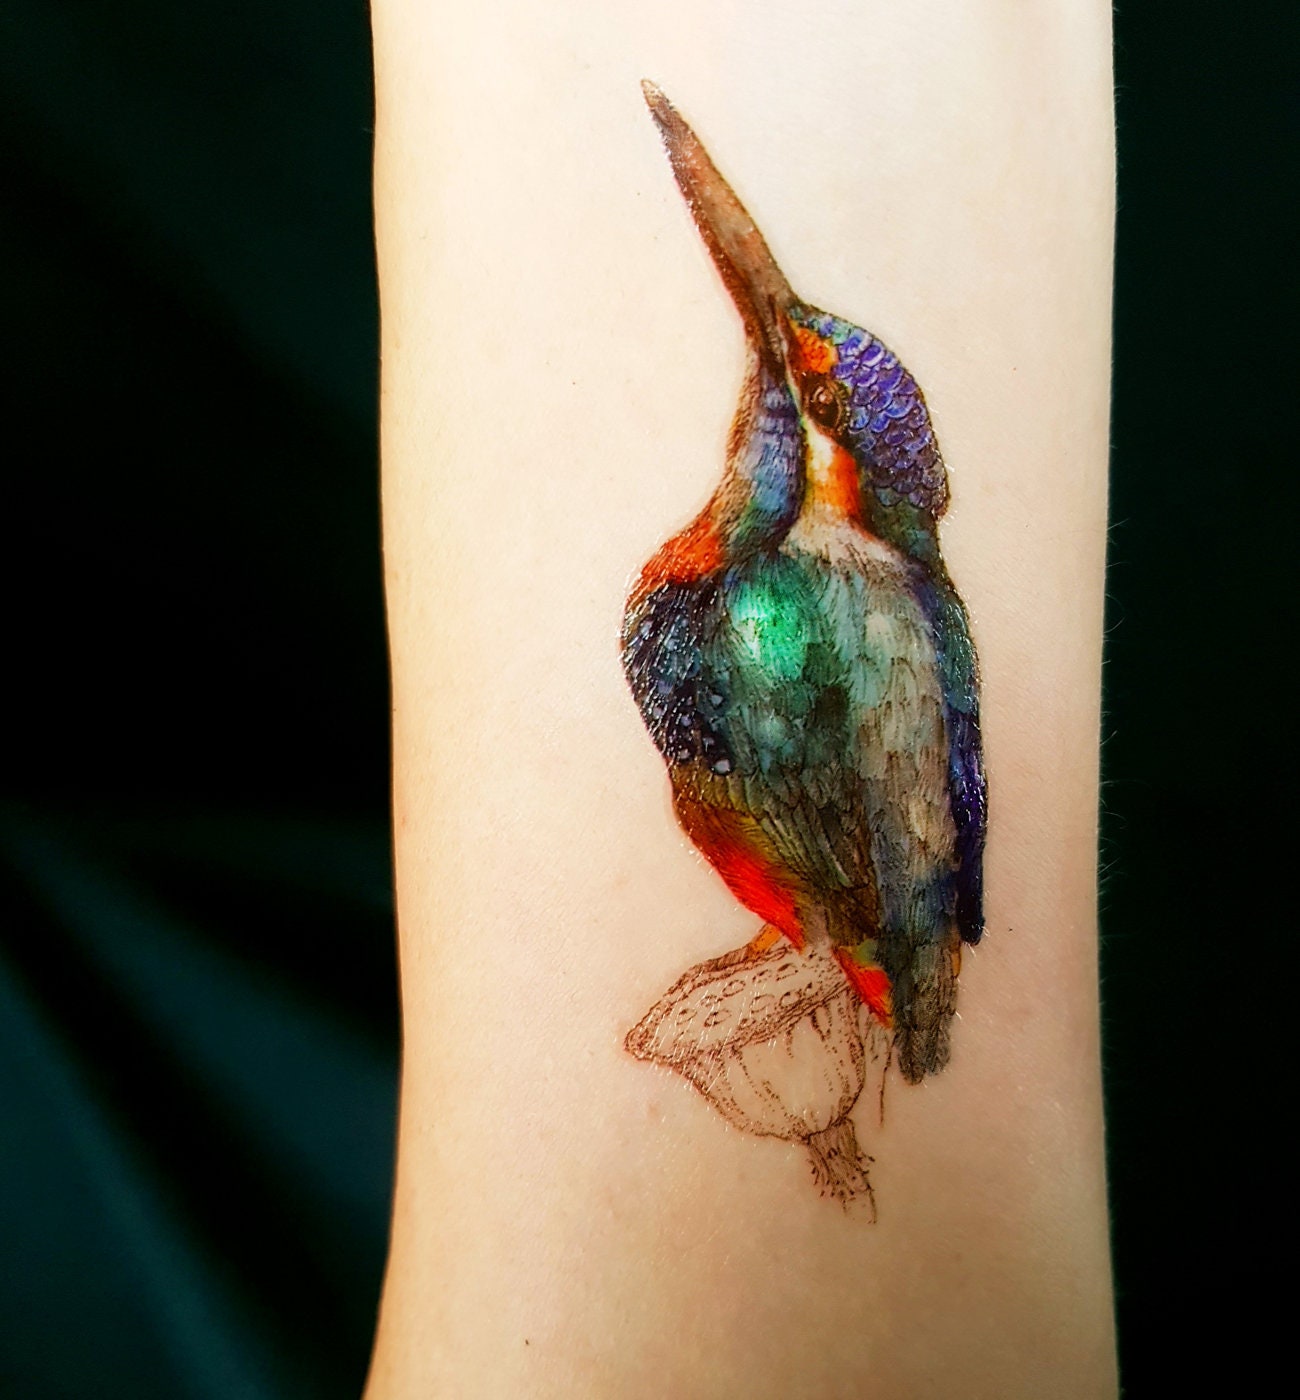 Om Shankar Tattoo Studio - Tattoo # Kingfisher bird tattoo back tattoo best  tattoo studio in Goa India #omshankartattoo #art by Shankar pawar. For more  info visit us at http://www.omshankartattoo.com/latest-update/tattoo- kingfisher-/264?utm_source ...